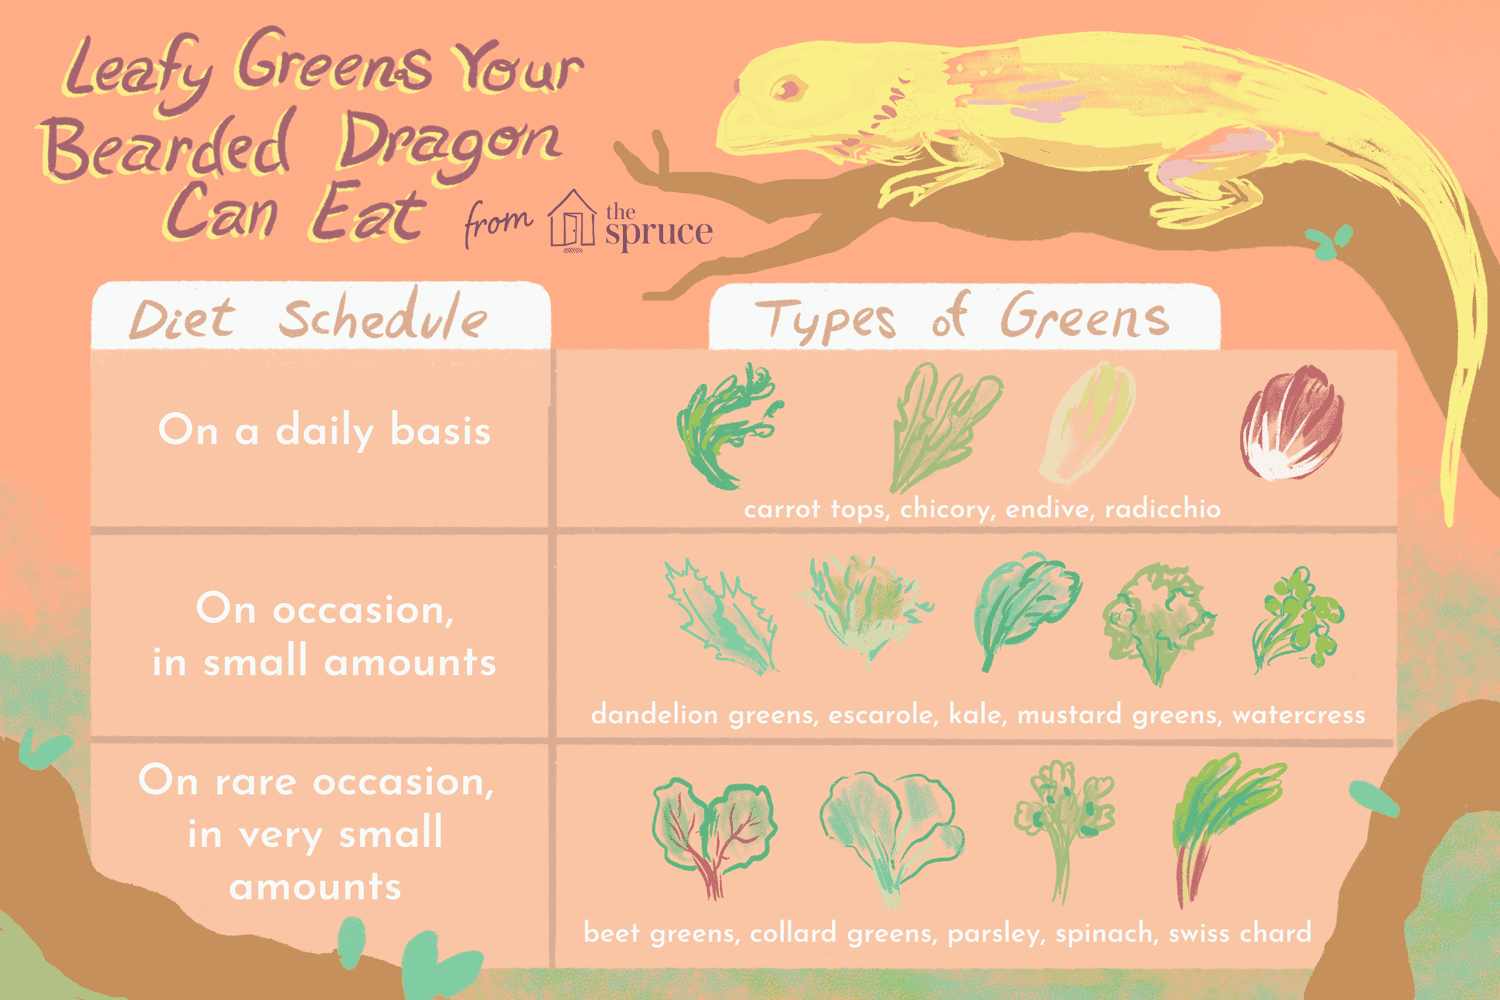 Des légumes verts feuillus pour nourrir votre dragon barbu